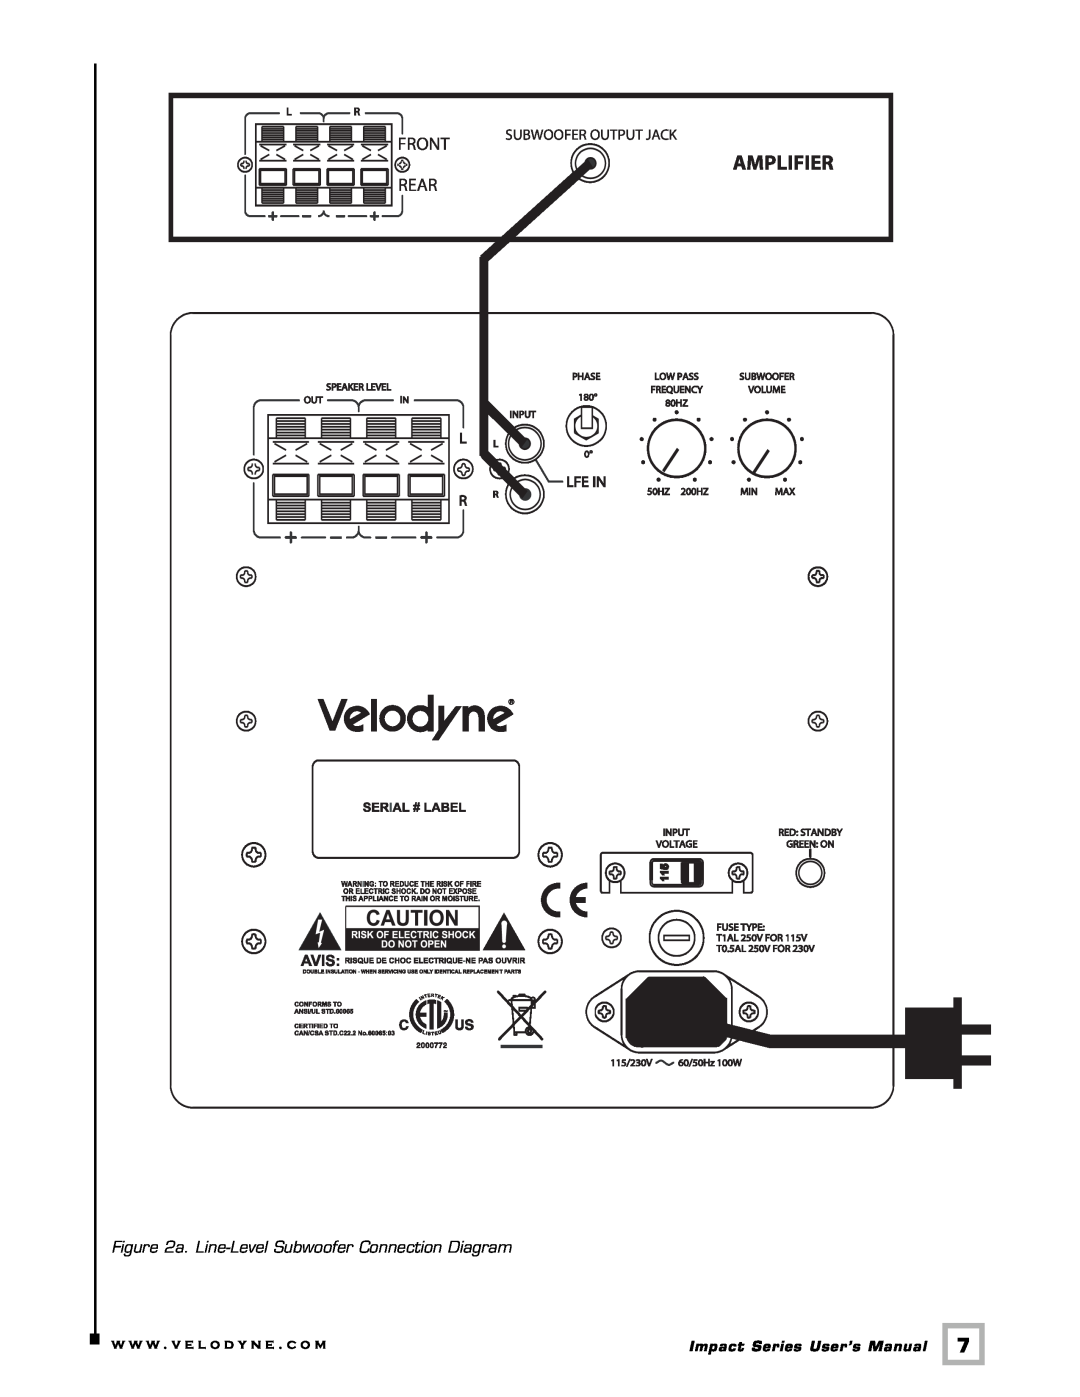 Velodyne Acoustics 63-IMP user manual Rear, a. Line-LevelSubwoofer Connection Diagram, Front, Subwoofer Output Jack 